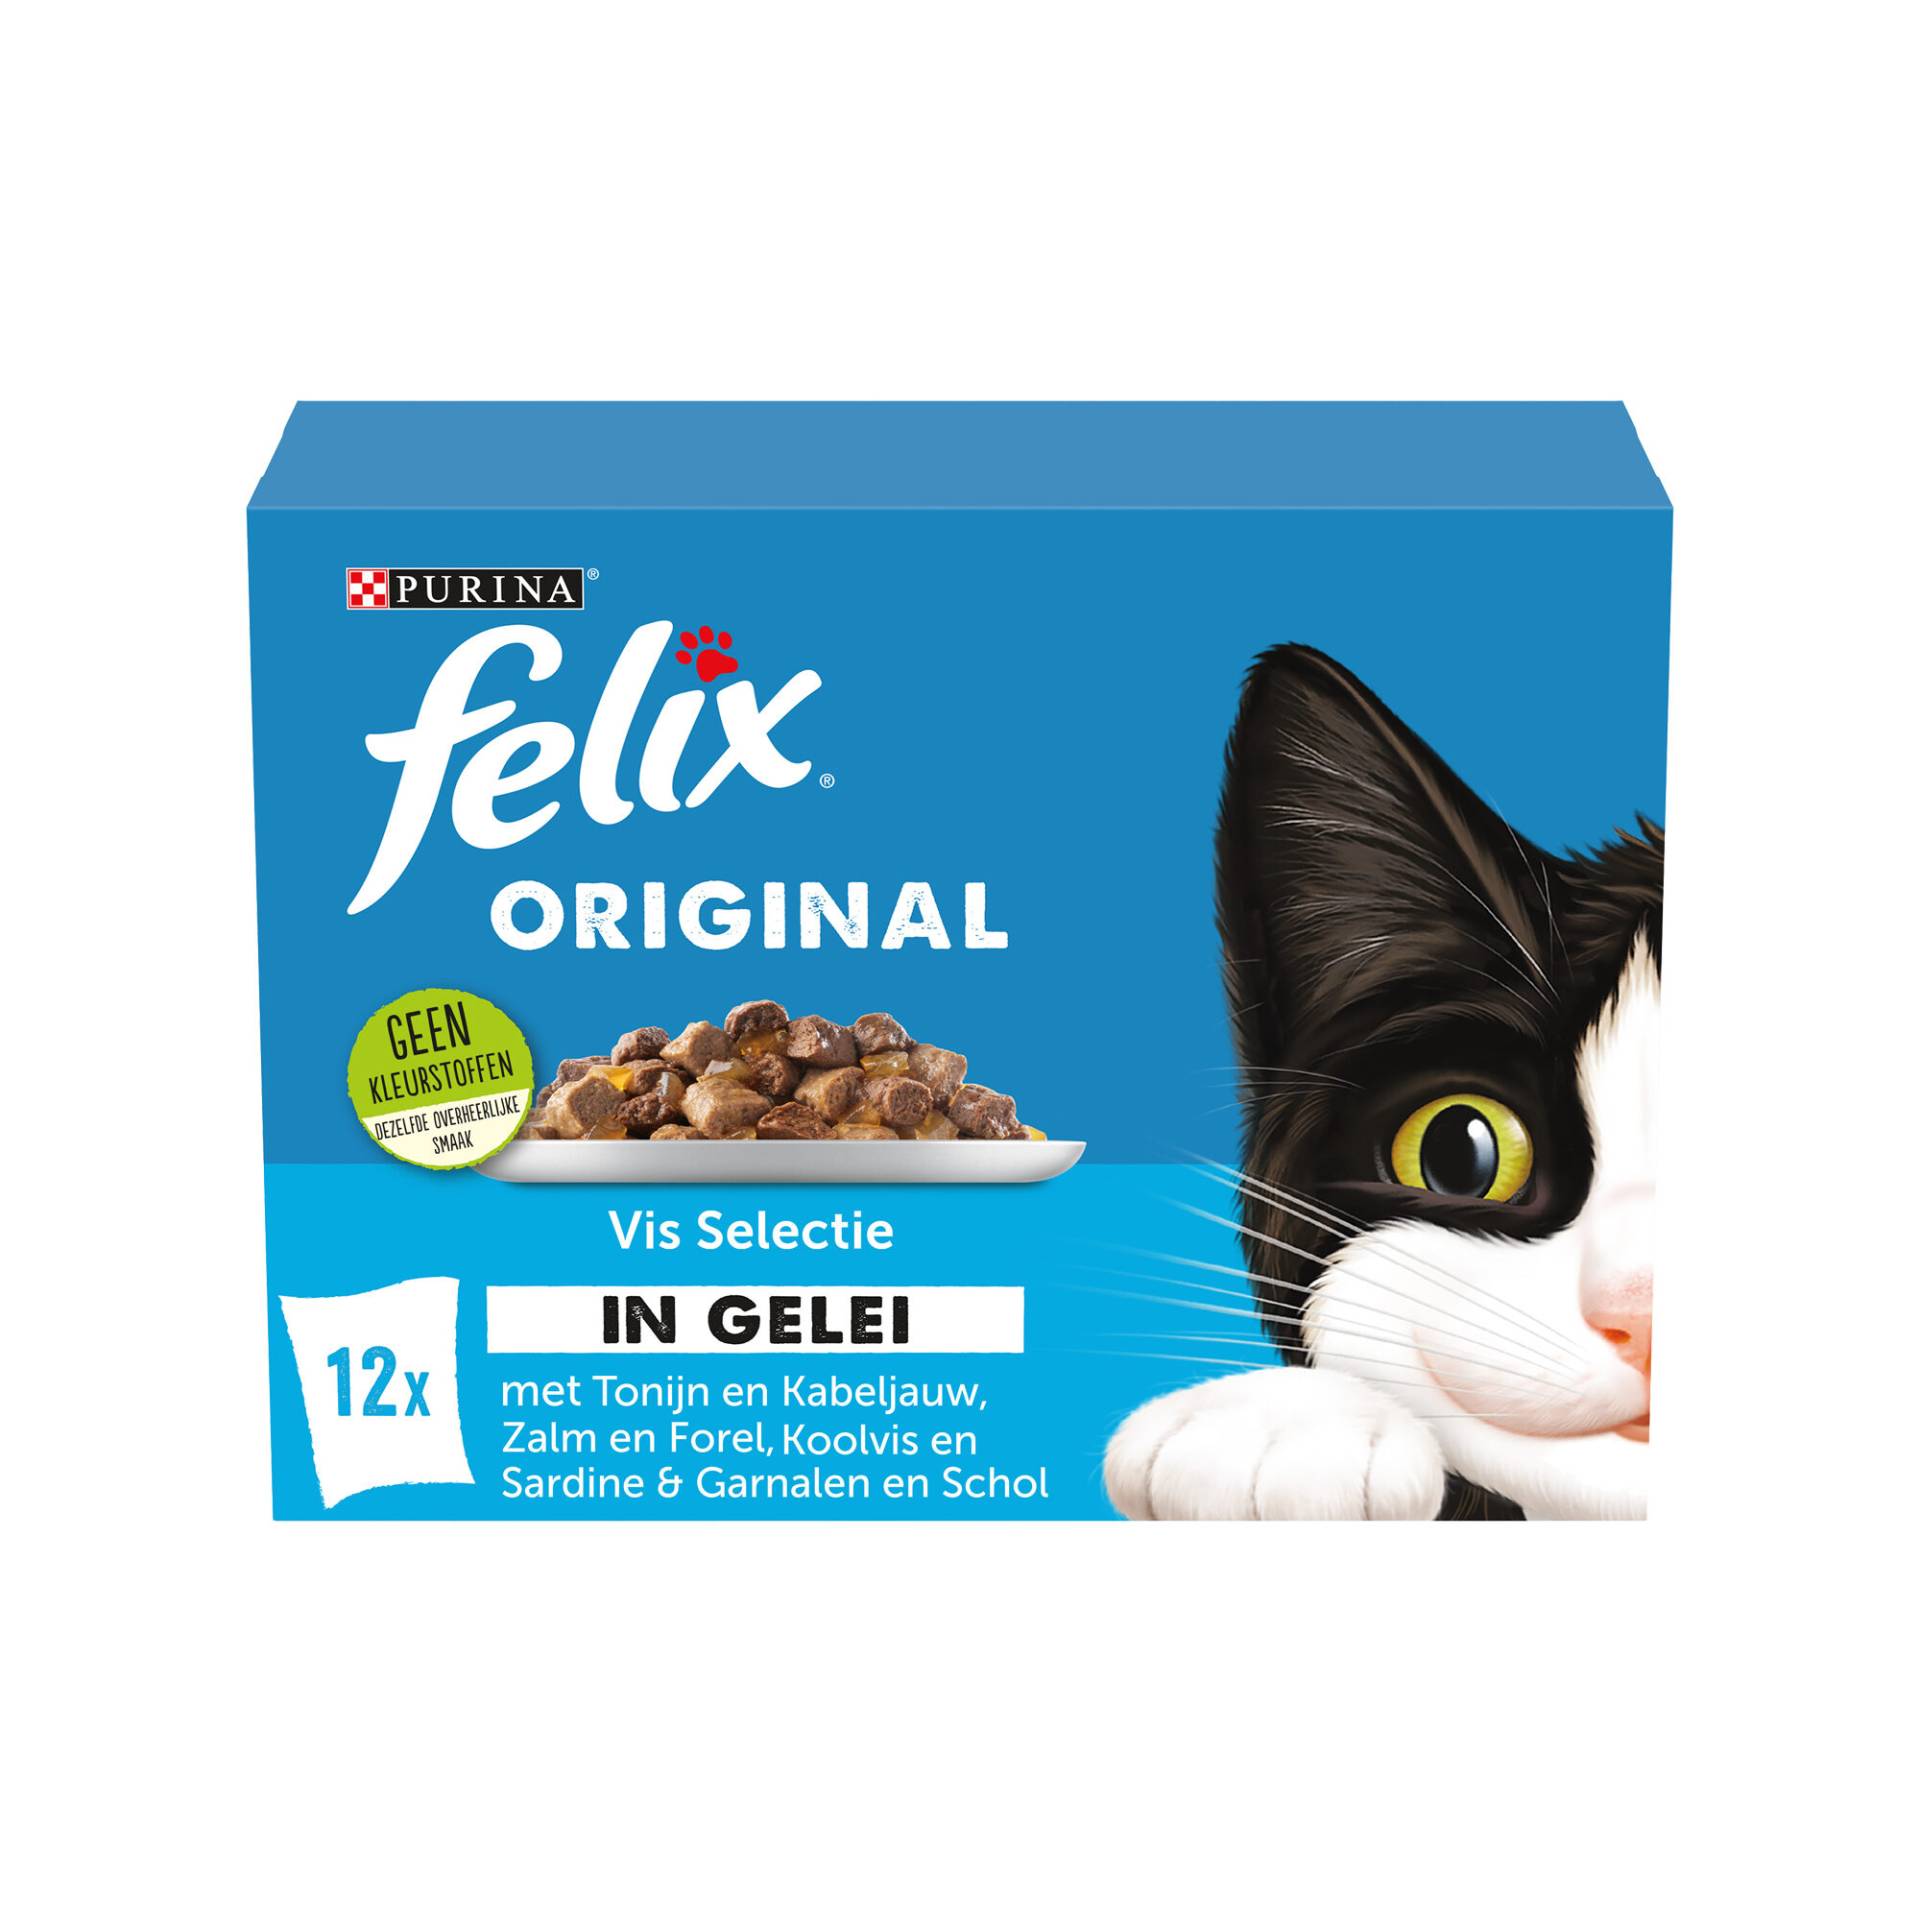 FELIX Original Fischauswahl in Gelee - 24 x 85 gram von Purina